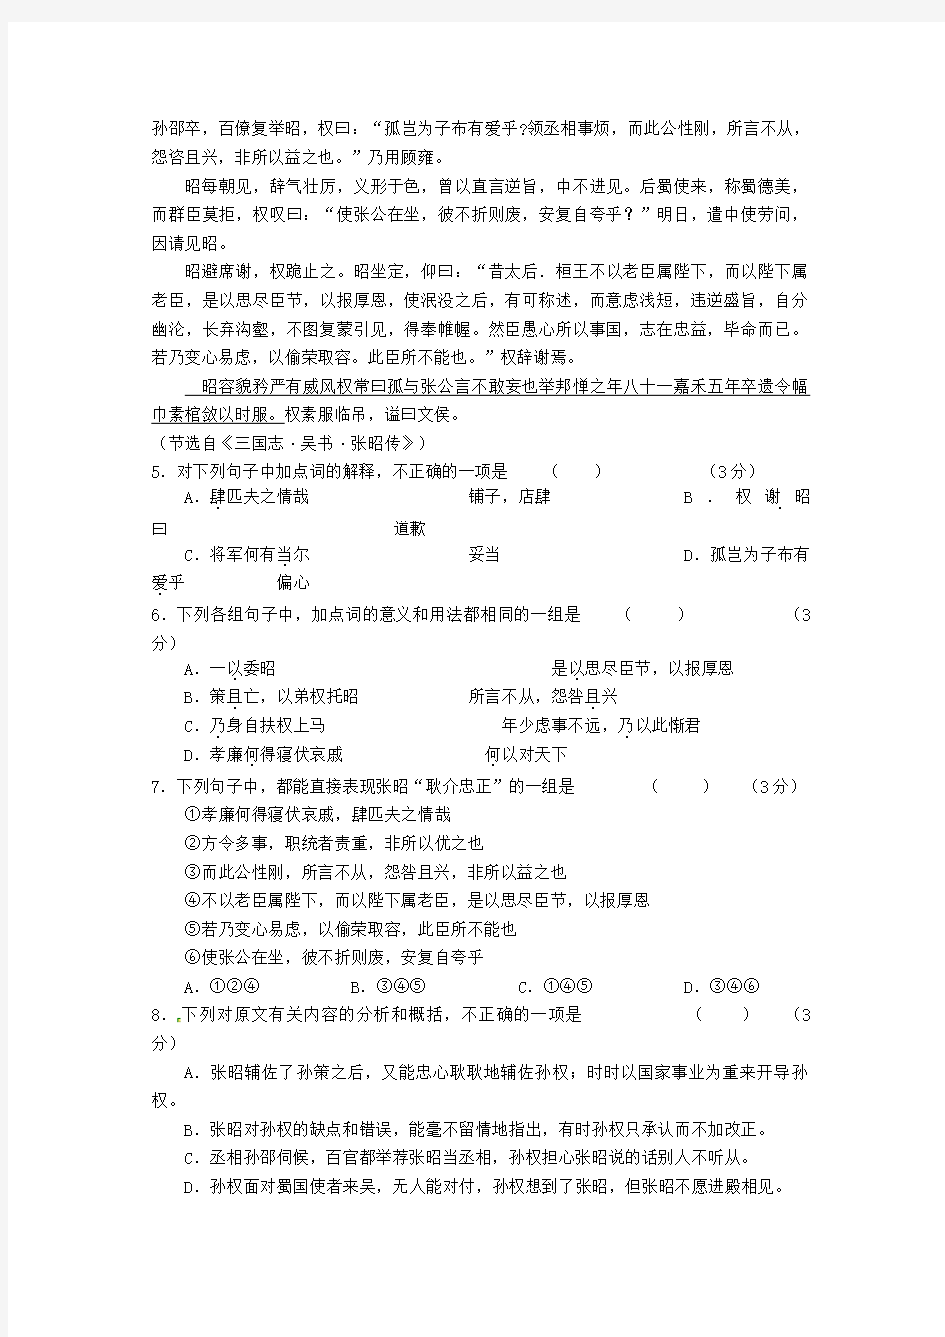 河北省沙河市第一中学2020年高考语文练习(34)